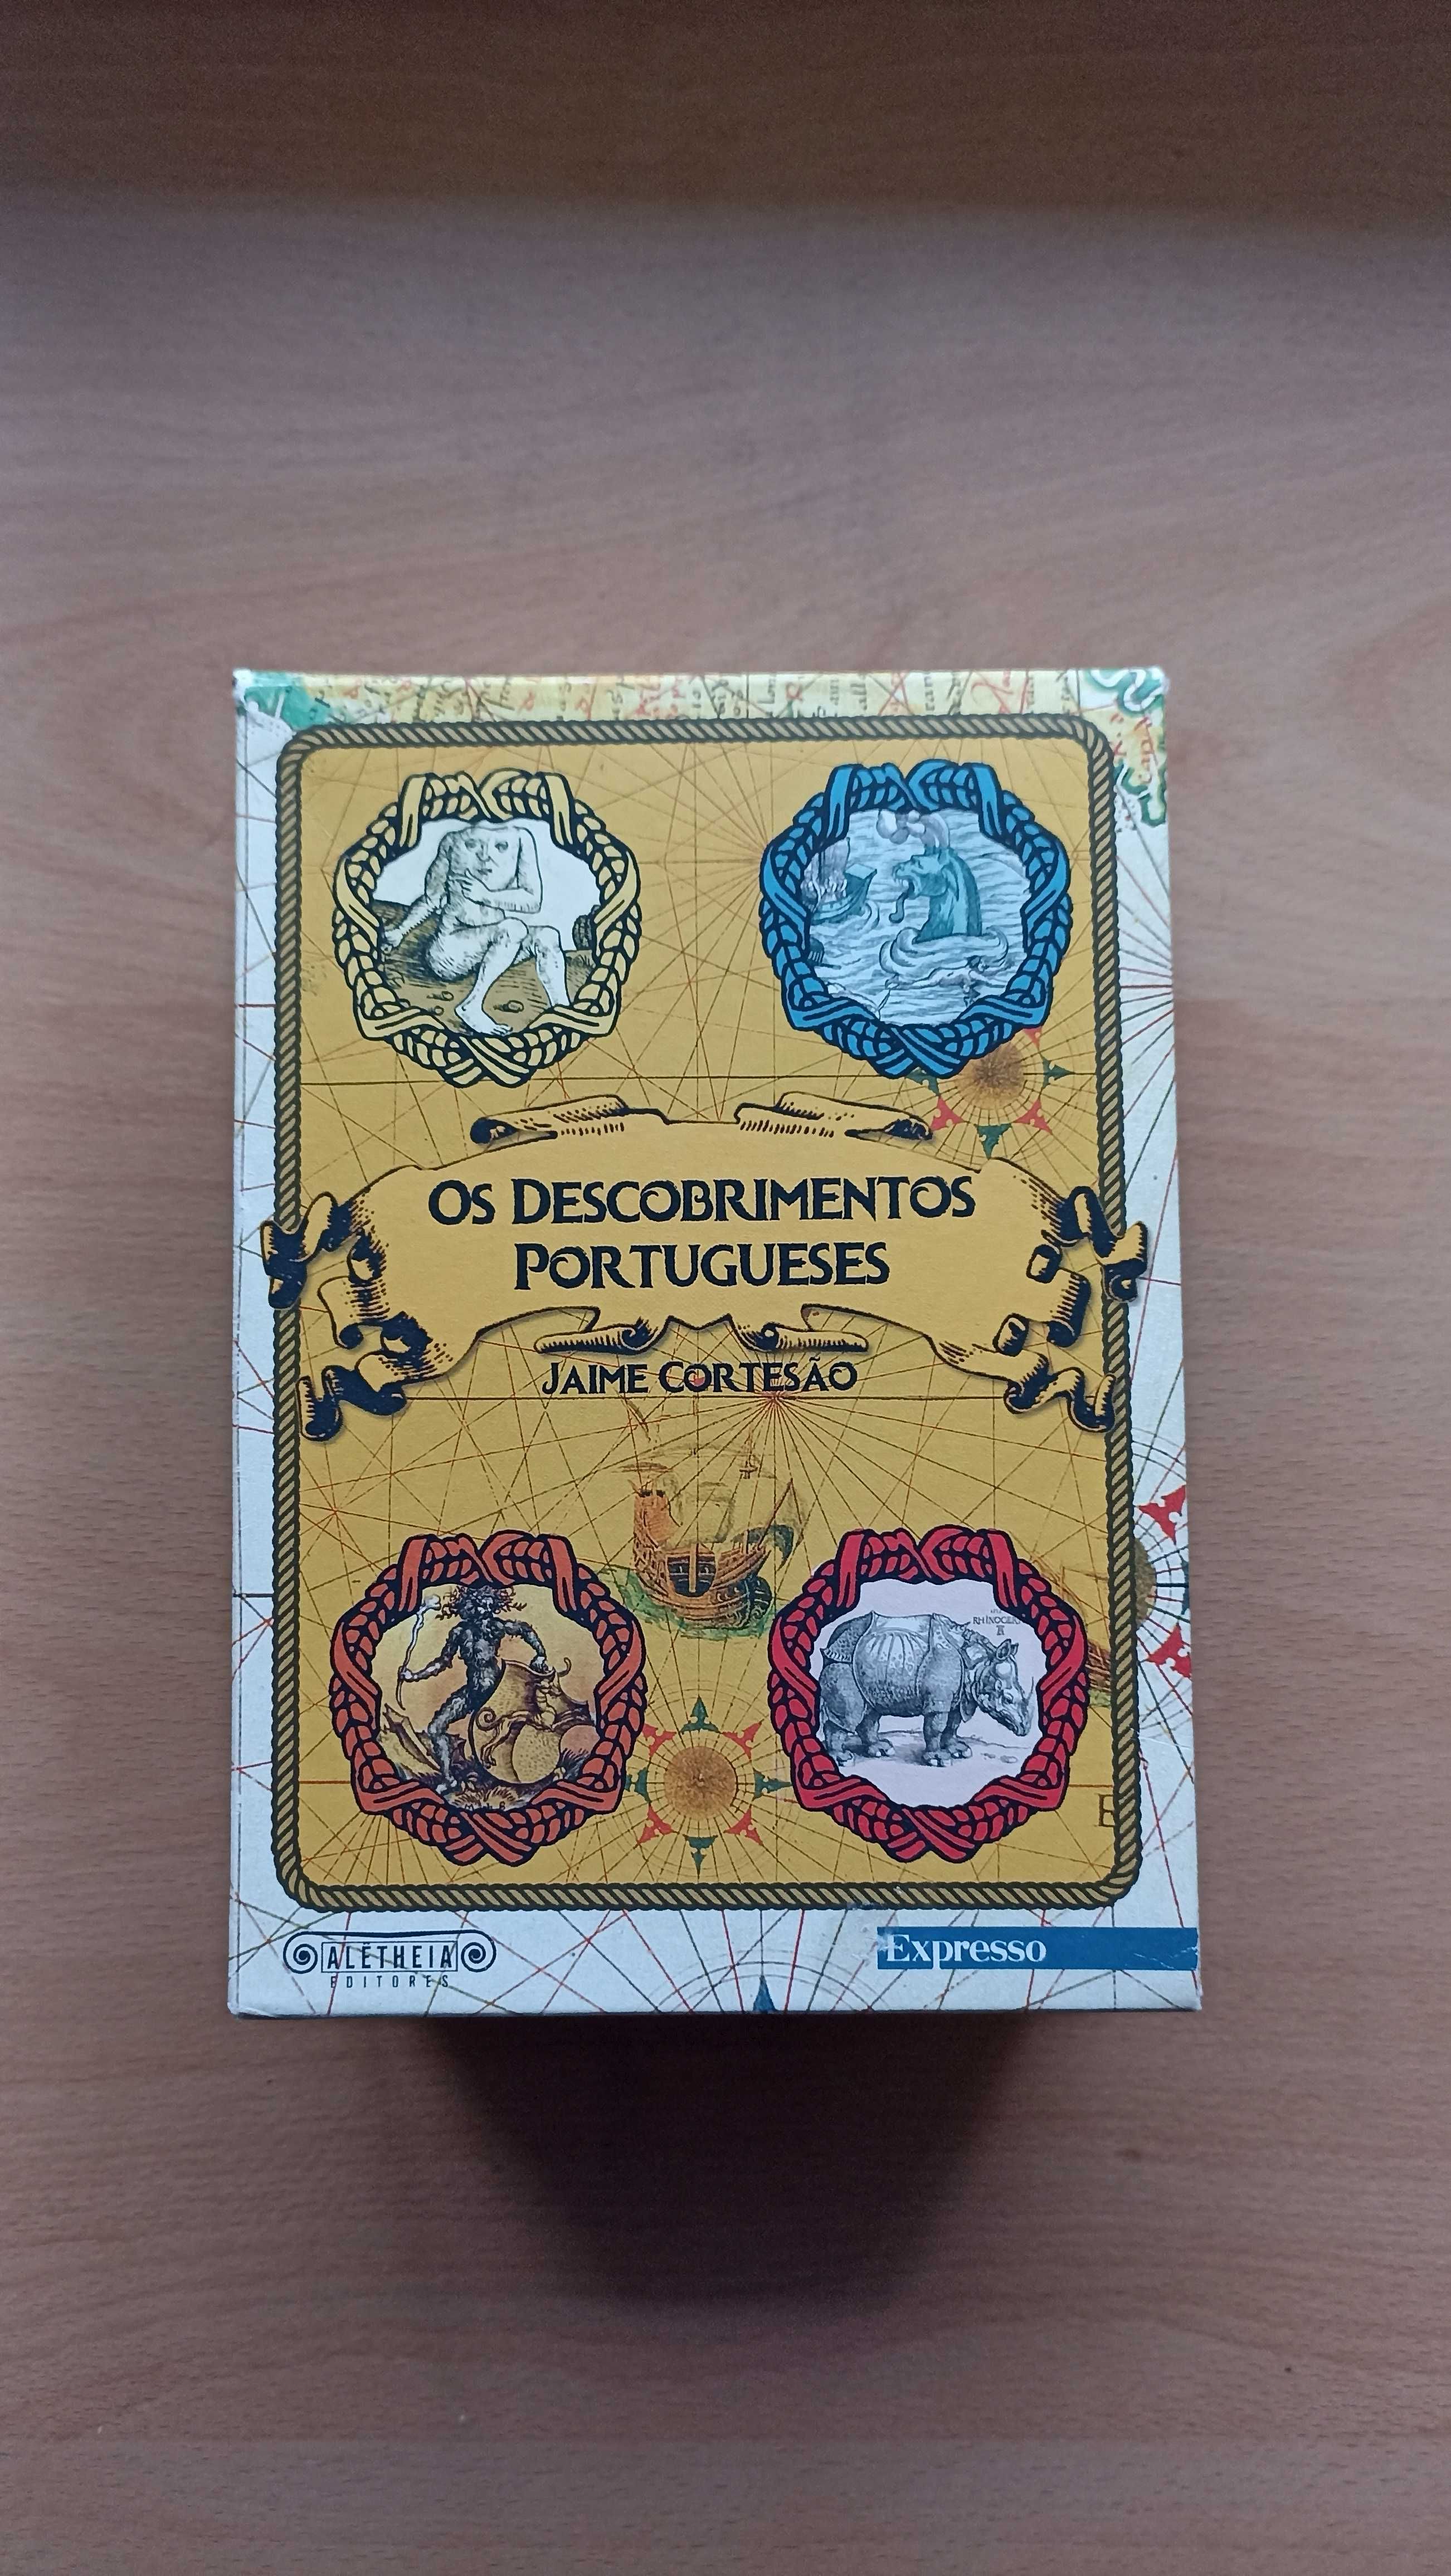 Livro "Os Descobrimentos Portugueses" de Jaime Cortesão